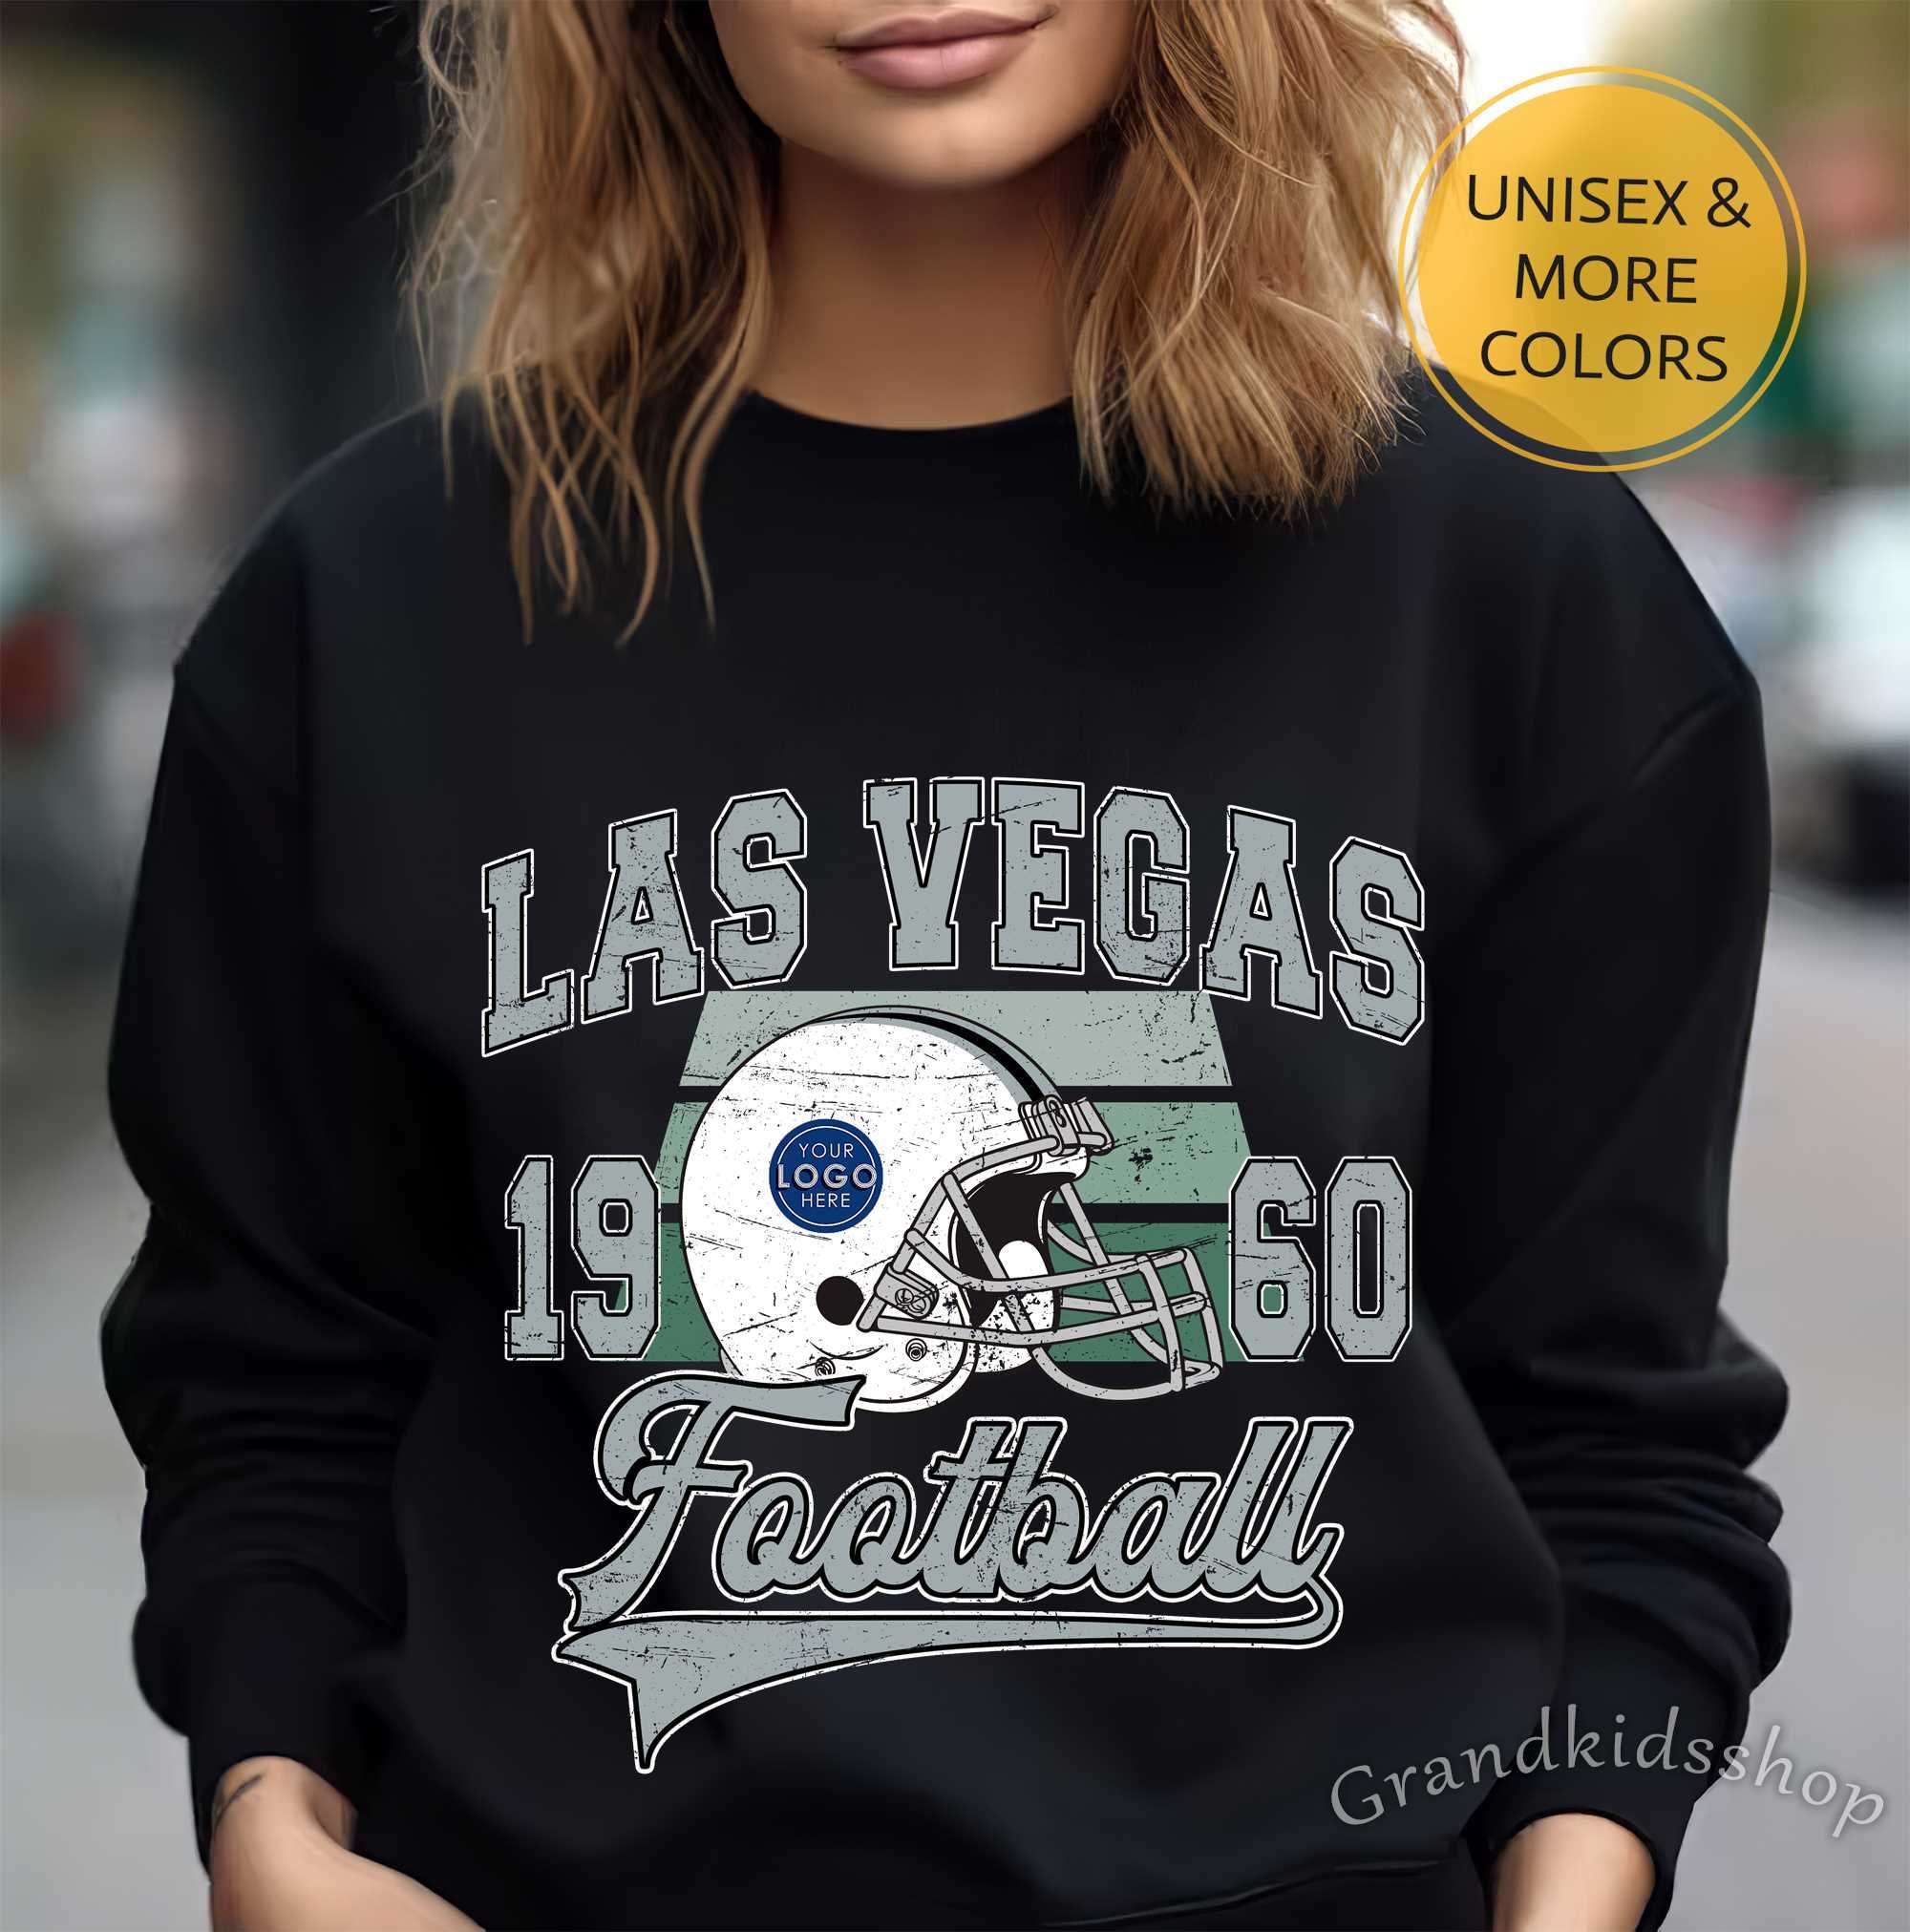 Las Vegas Raiders Football Vintage Crewneck Sweatshirt - Cruel Ball